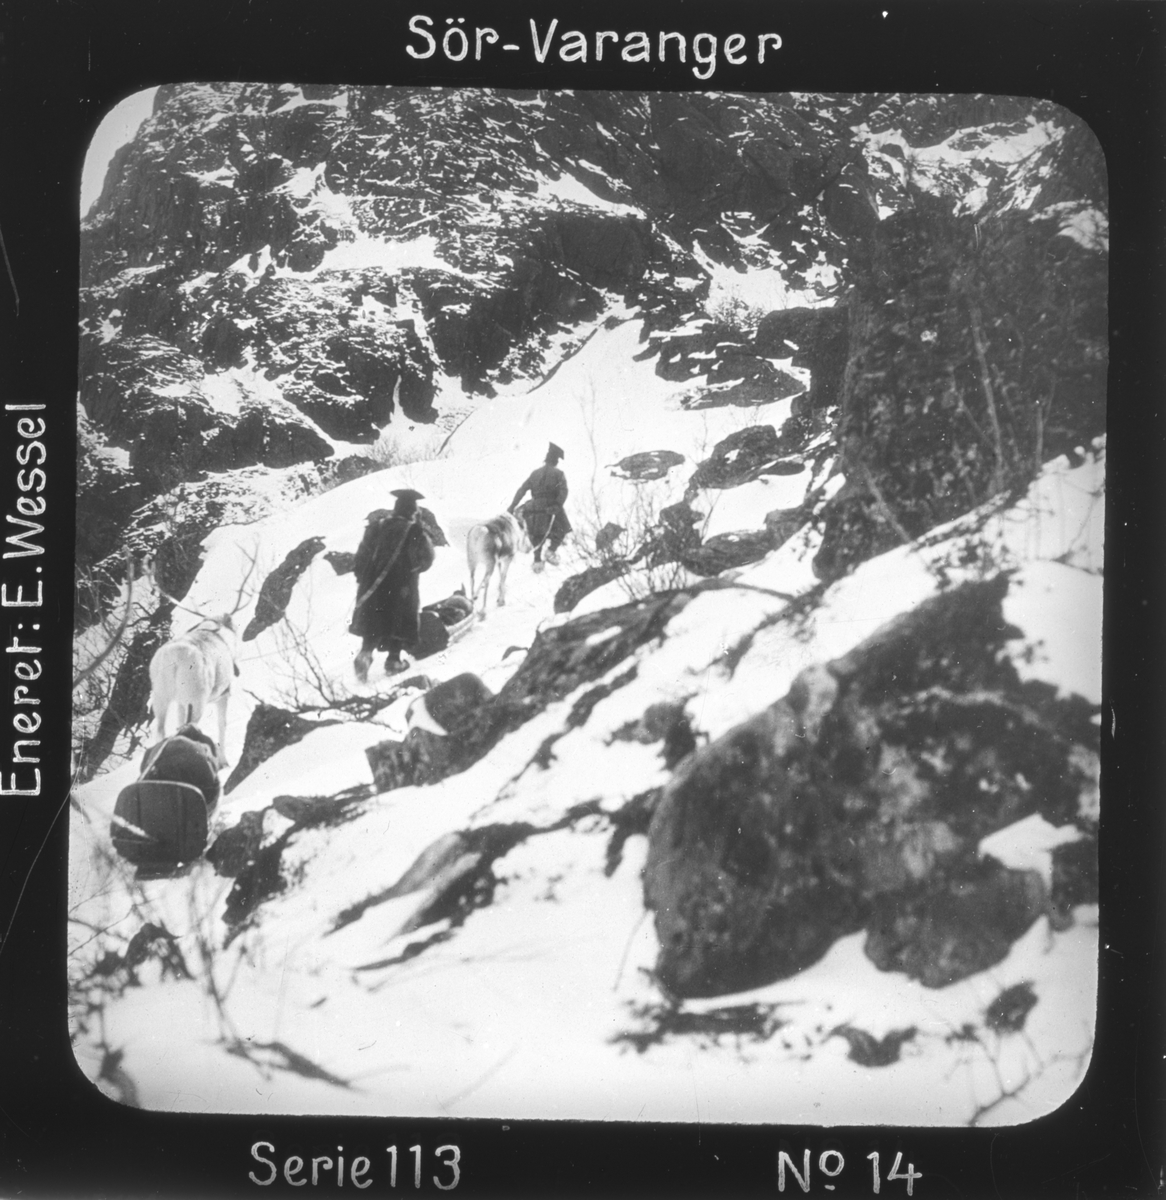 Doktorskyss passerer "Jakobselvskaret", ved Jakobselva, Sør-Varanger, Finnmark.
Motivet har nr.14 i lysbildeforedraget kalt  "I lappernes land - Sør-Varanger", utgitt i Nerliens Lysbilledserier, serie nr 113. 